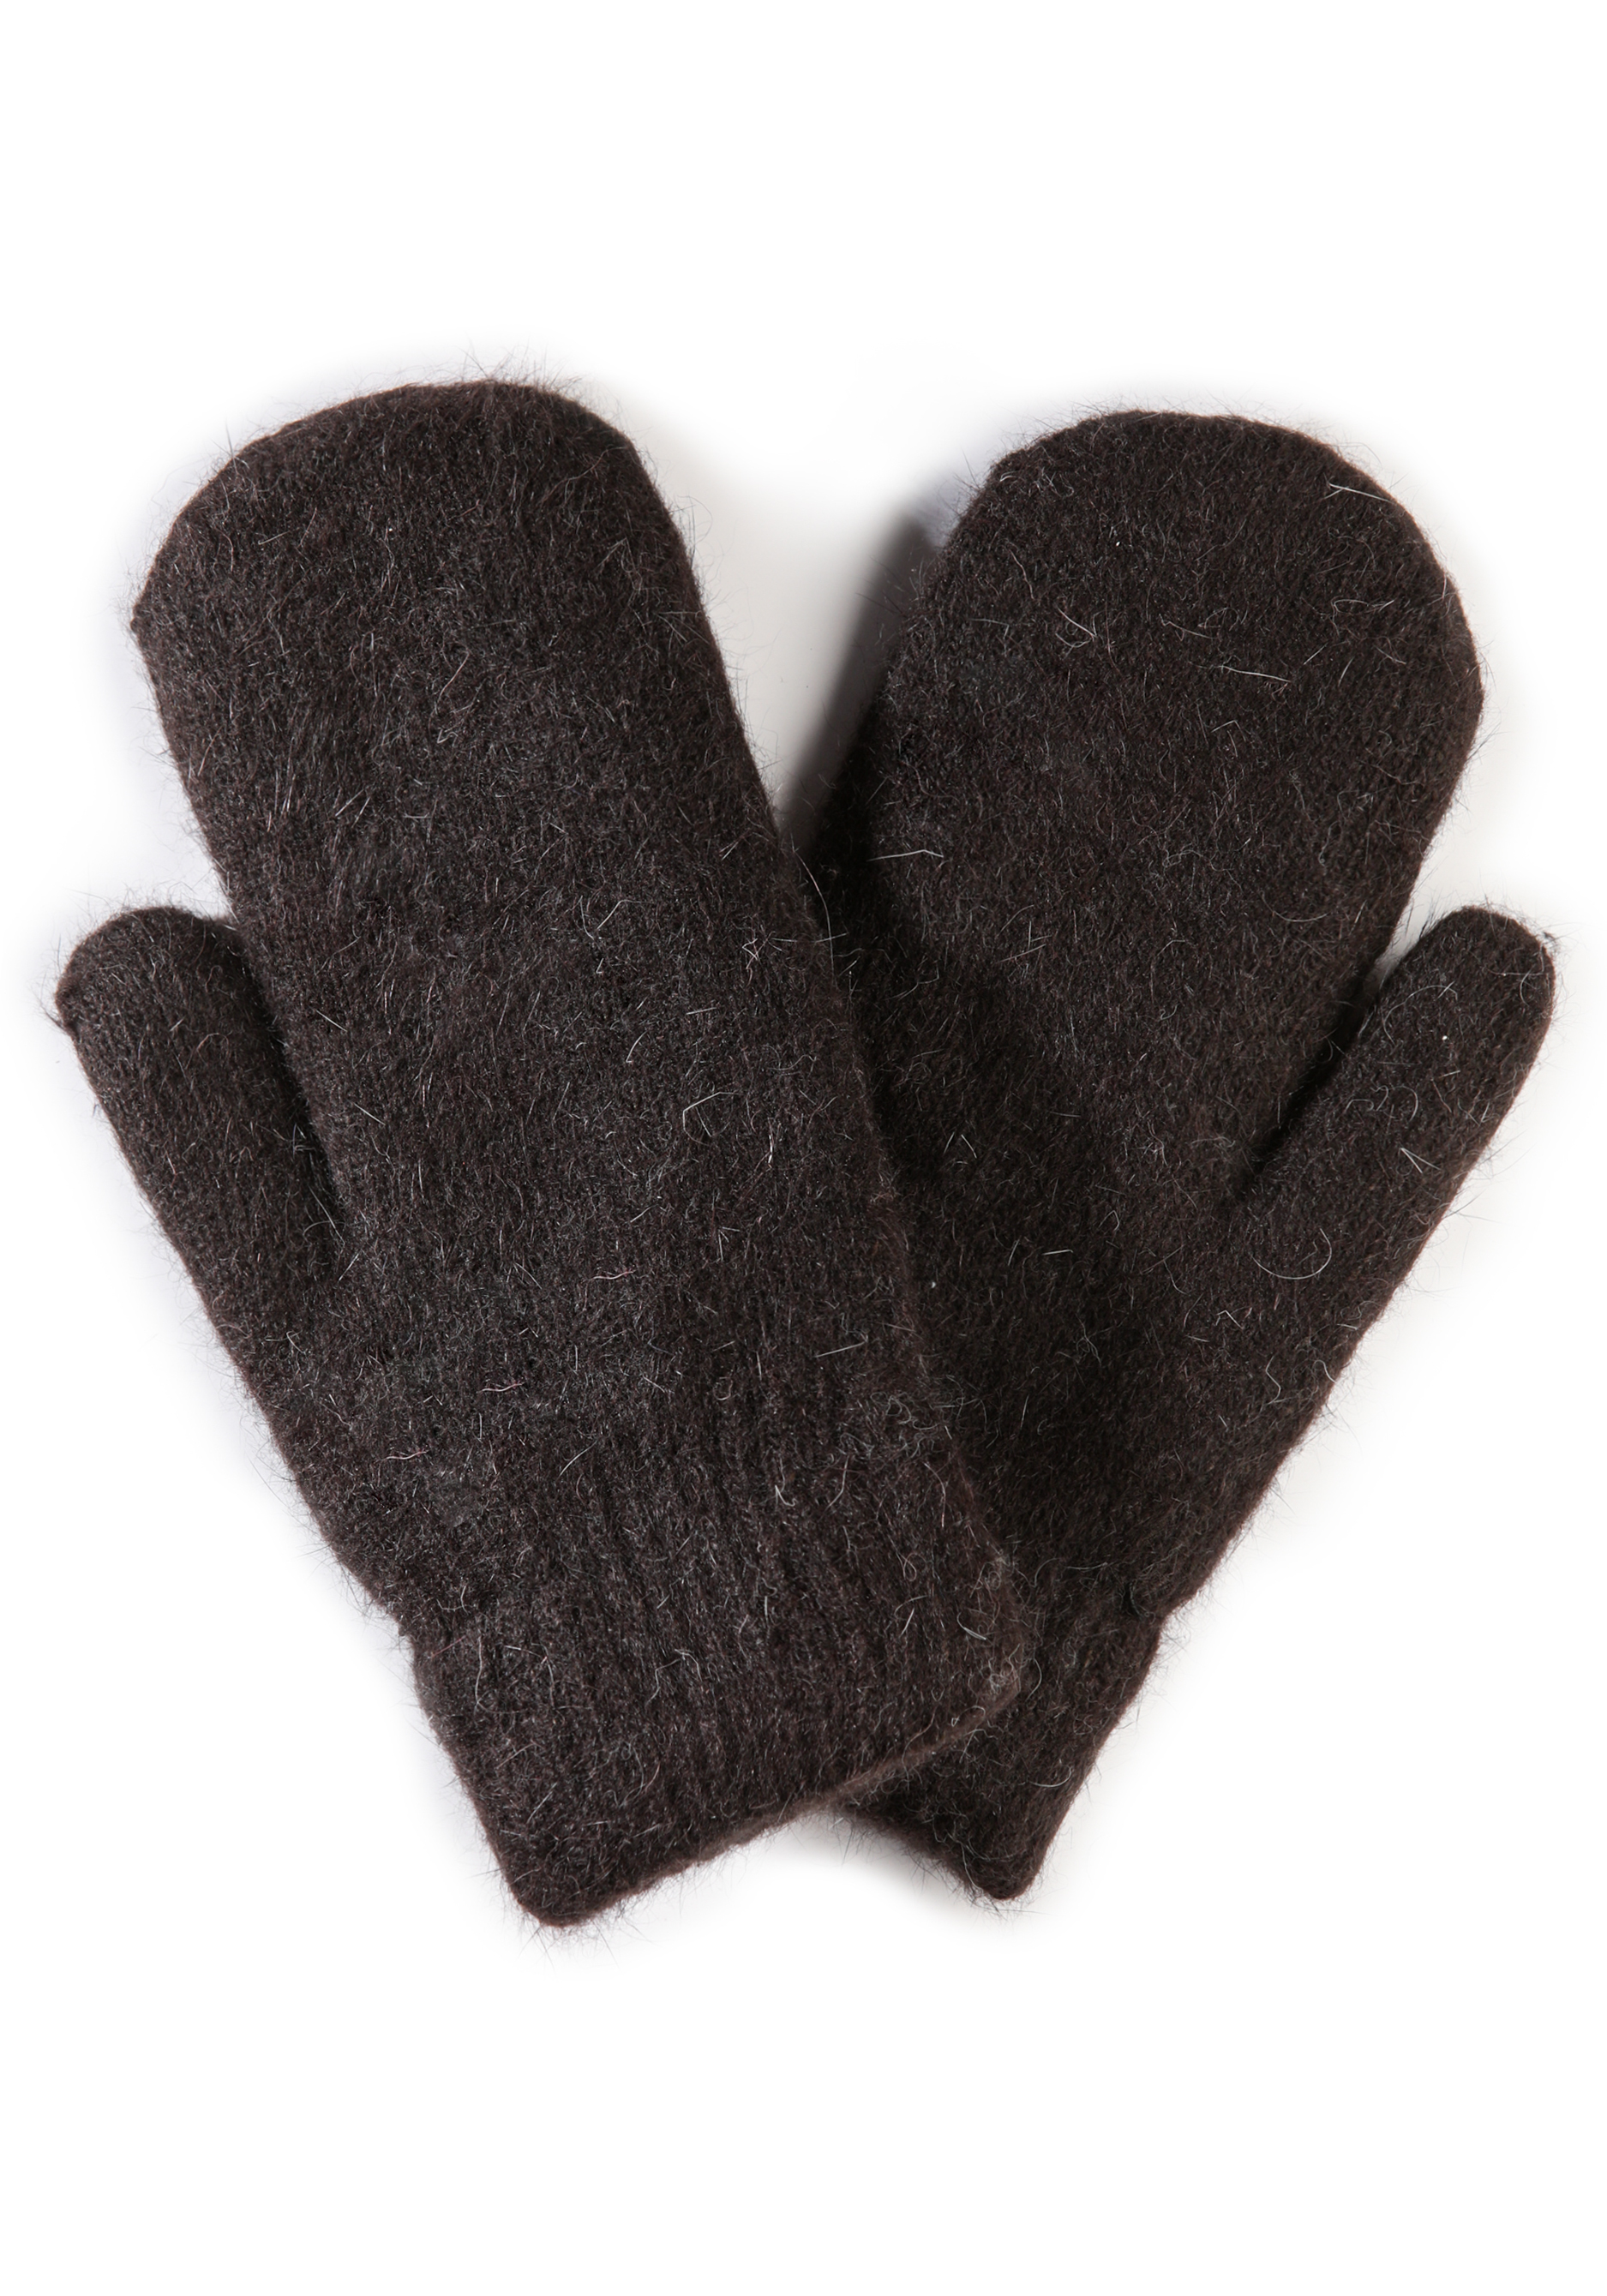 Варежки шерстяные «Максимальное тепло», размер универсальный, цвет коричневый - фото 4